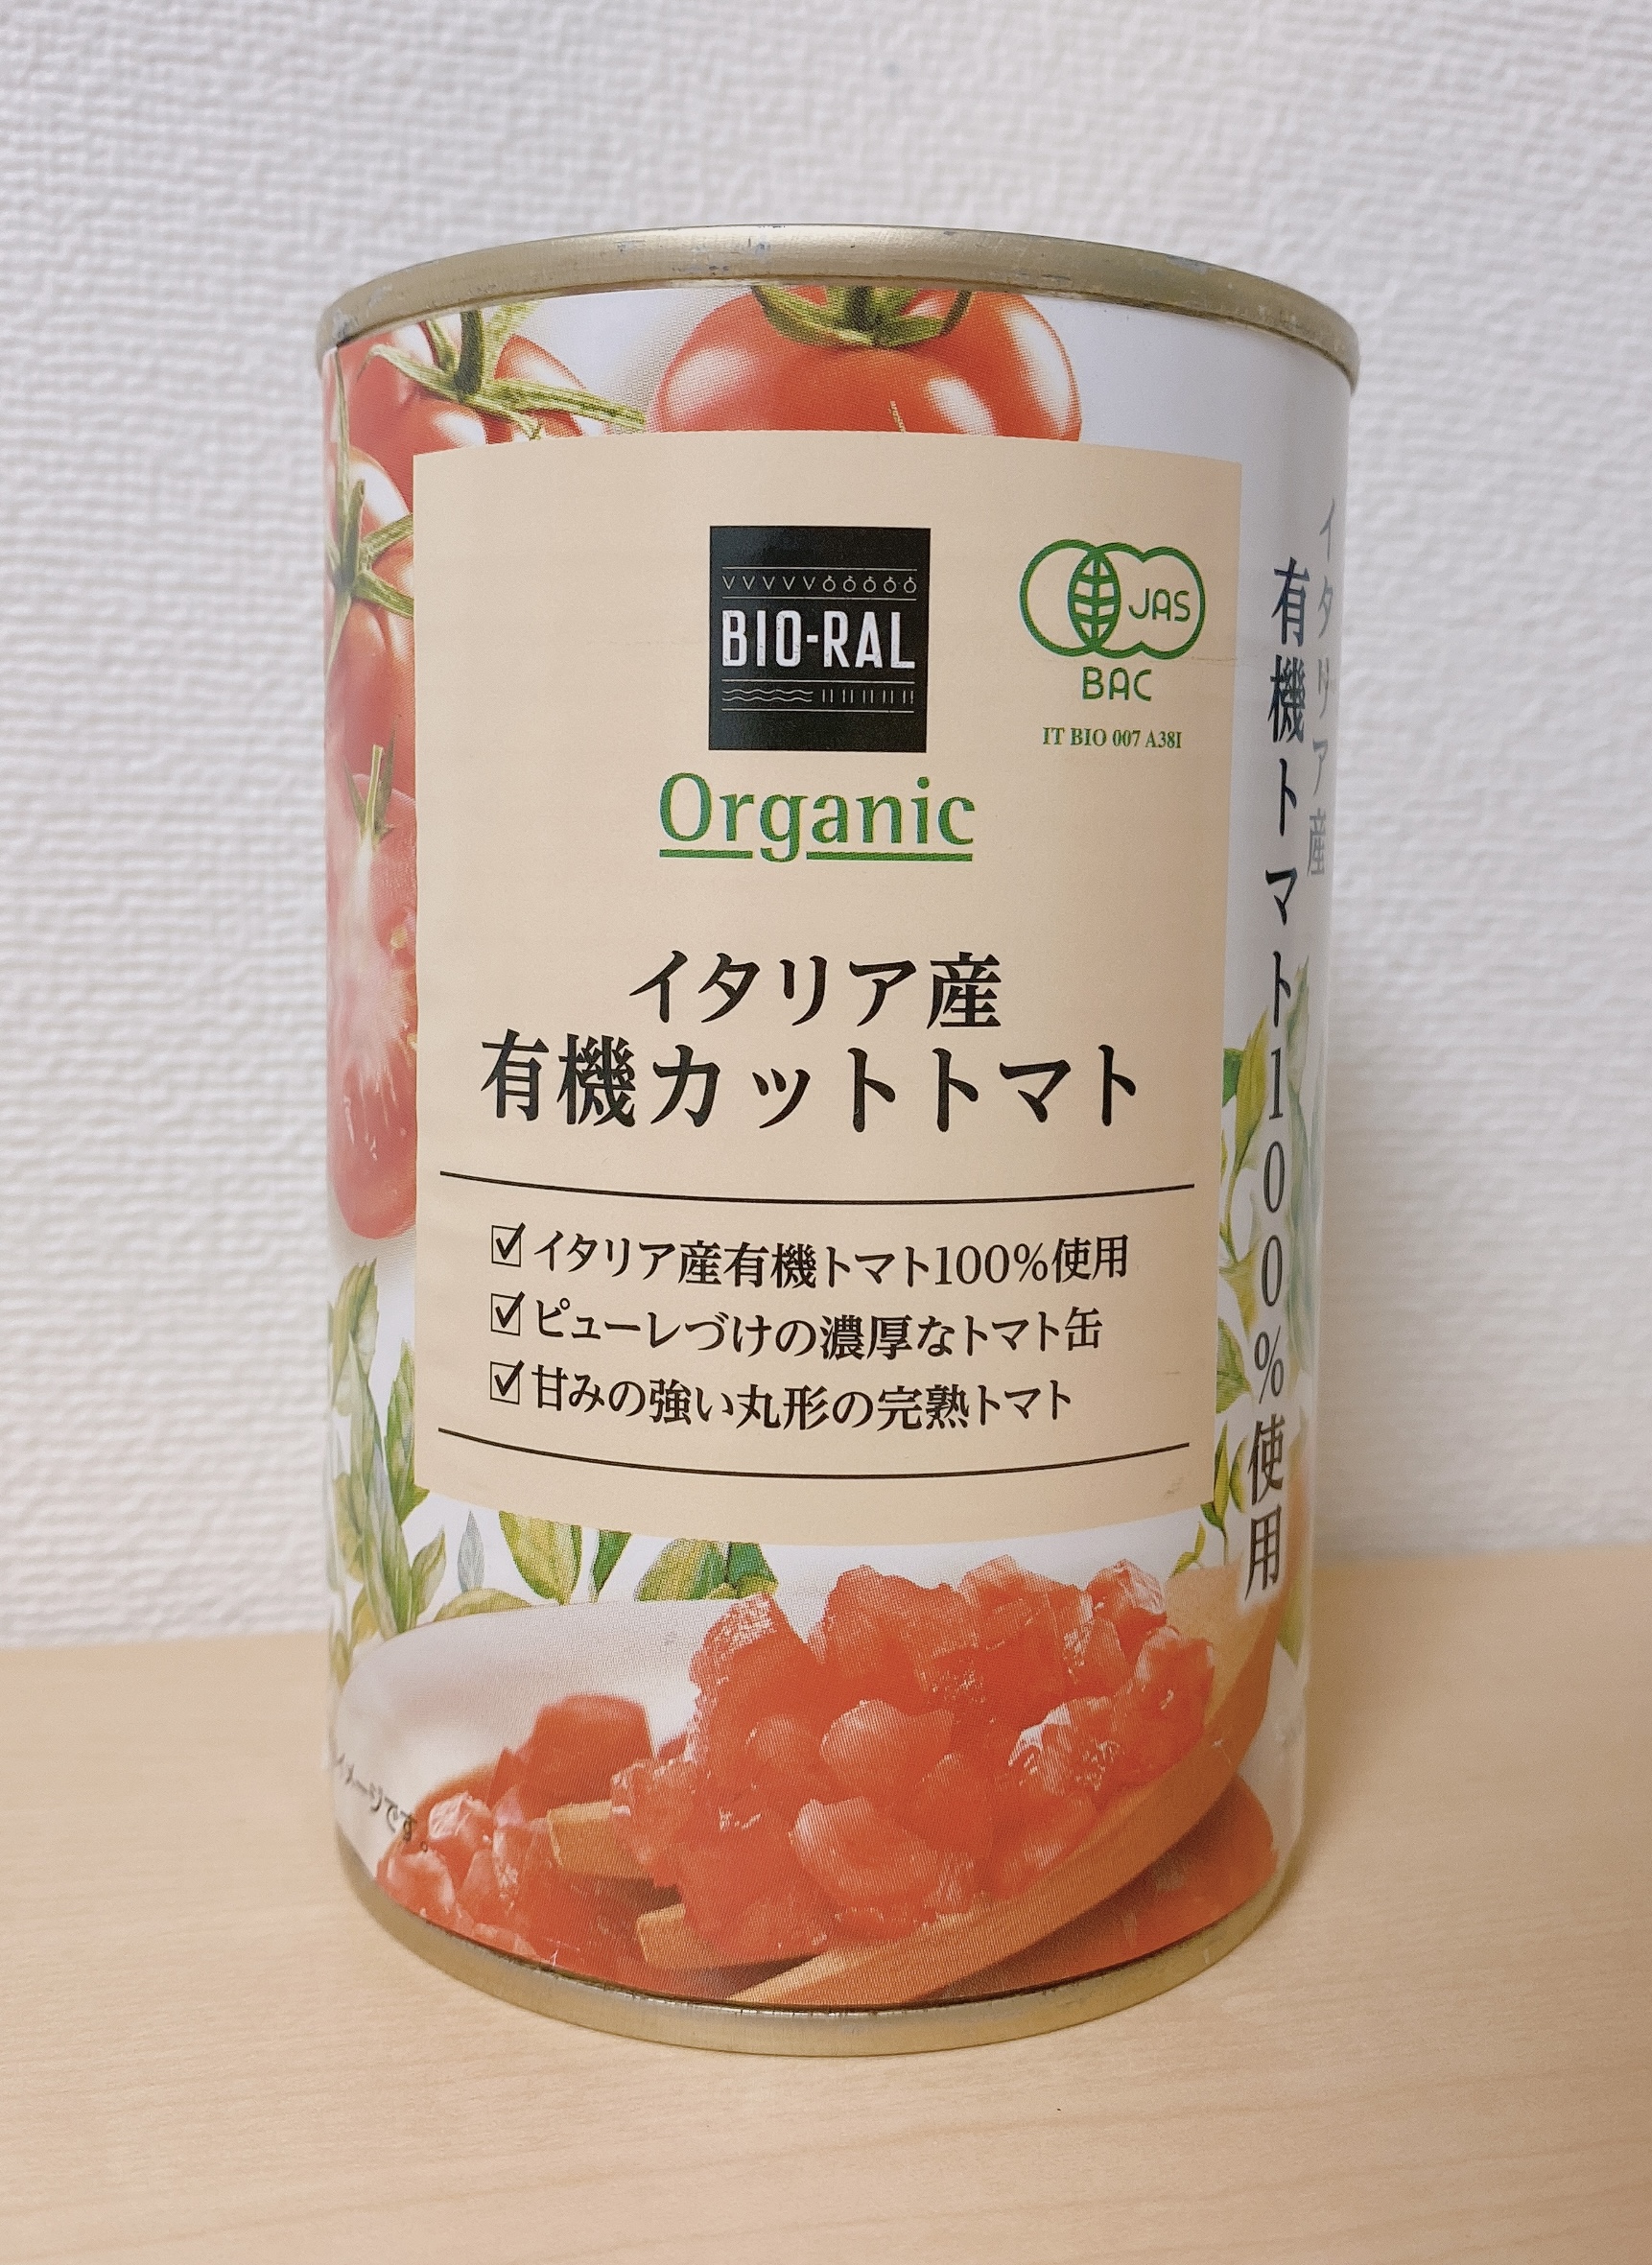 BIORAL_ビオラル_有機JASオーガニック_イタリア産有機カットトマト缶